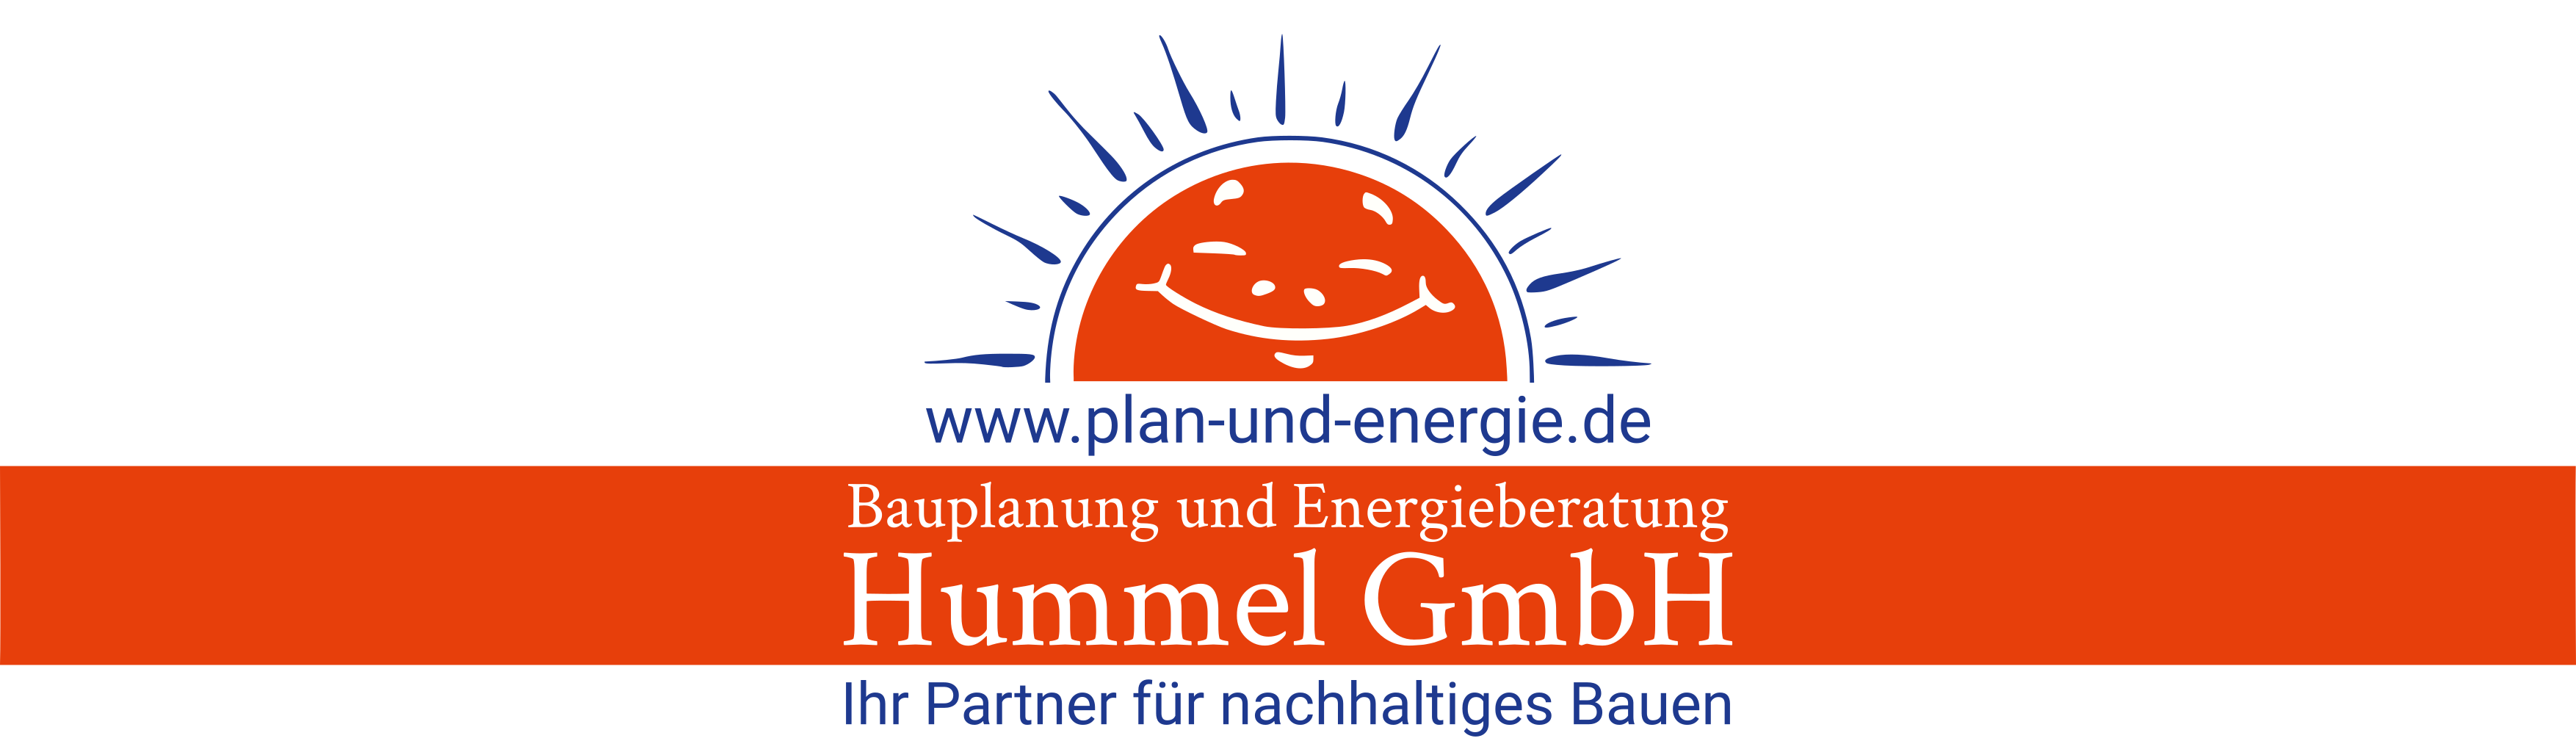 Bauplanung und Energieberatung Hummel GmbH